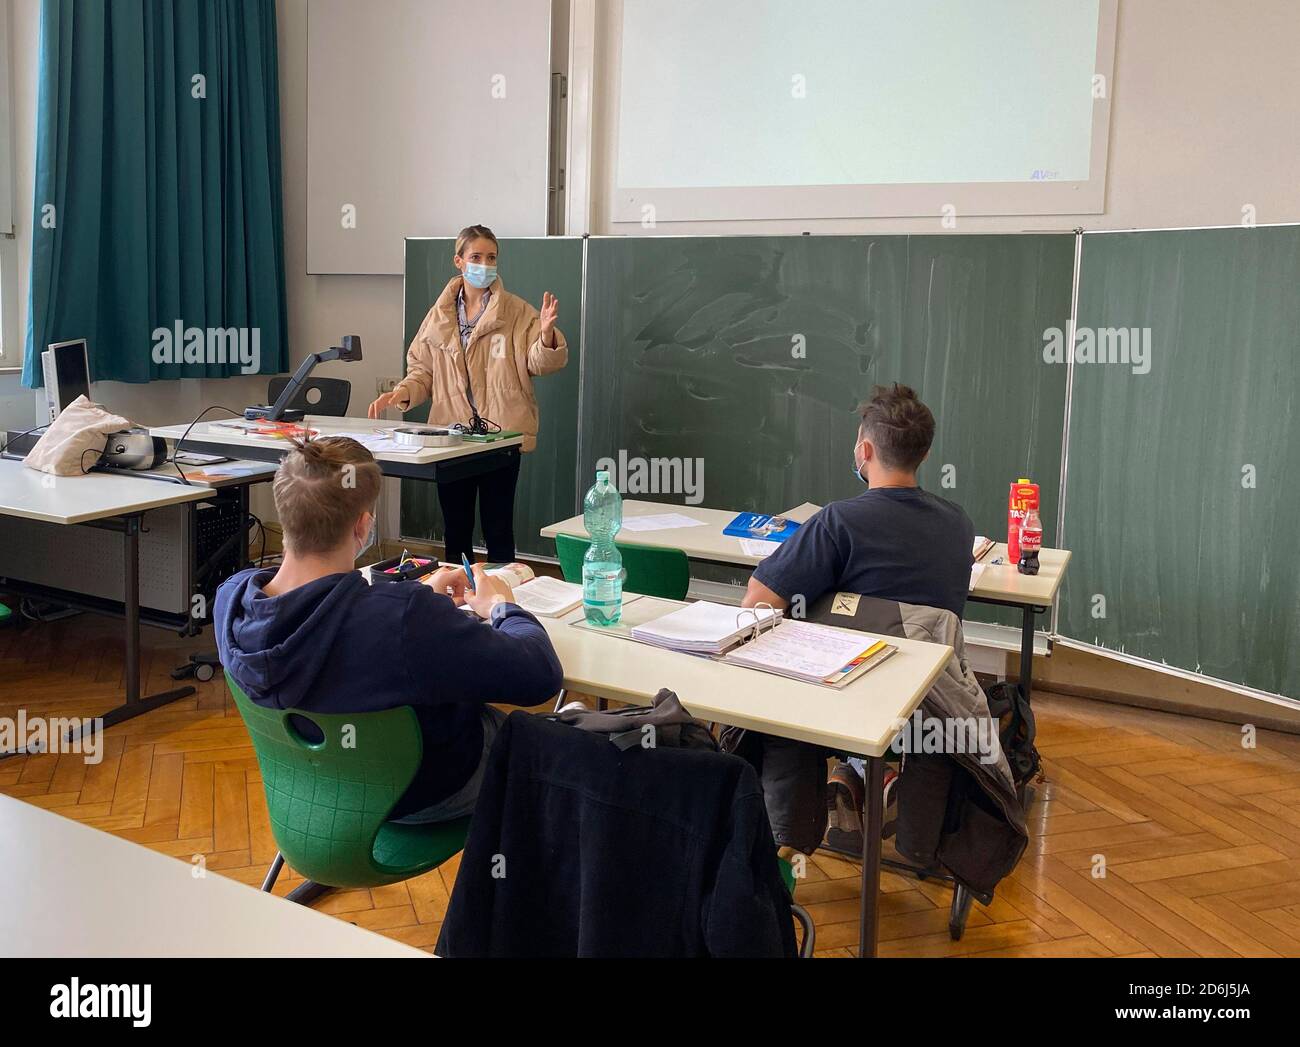 Insegnante con giacca invernale spessa e maschera facciale in aula insegnamento, gesti, crisi corona, Stoccarda, Baden-Wuerttemberg, Germania Foto Stock